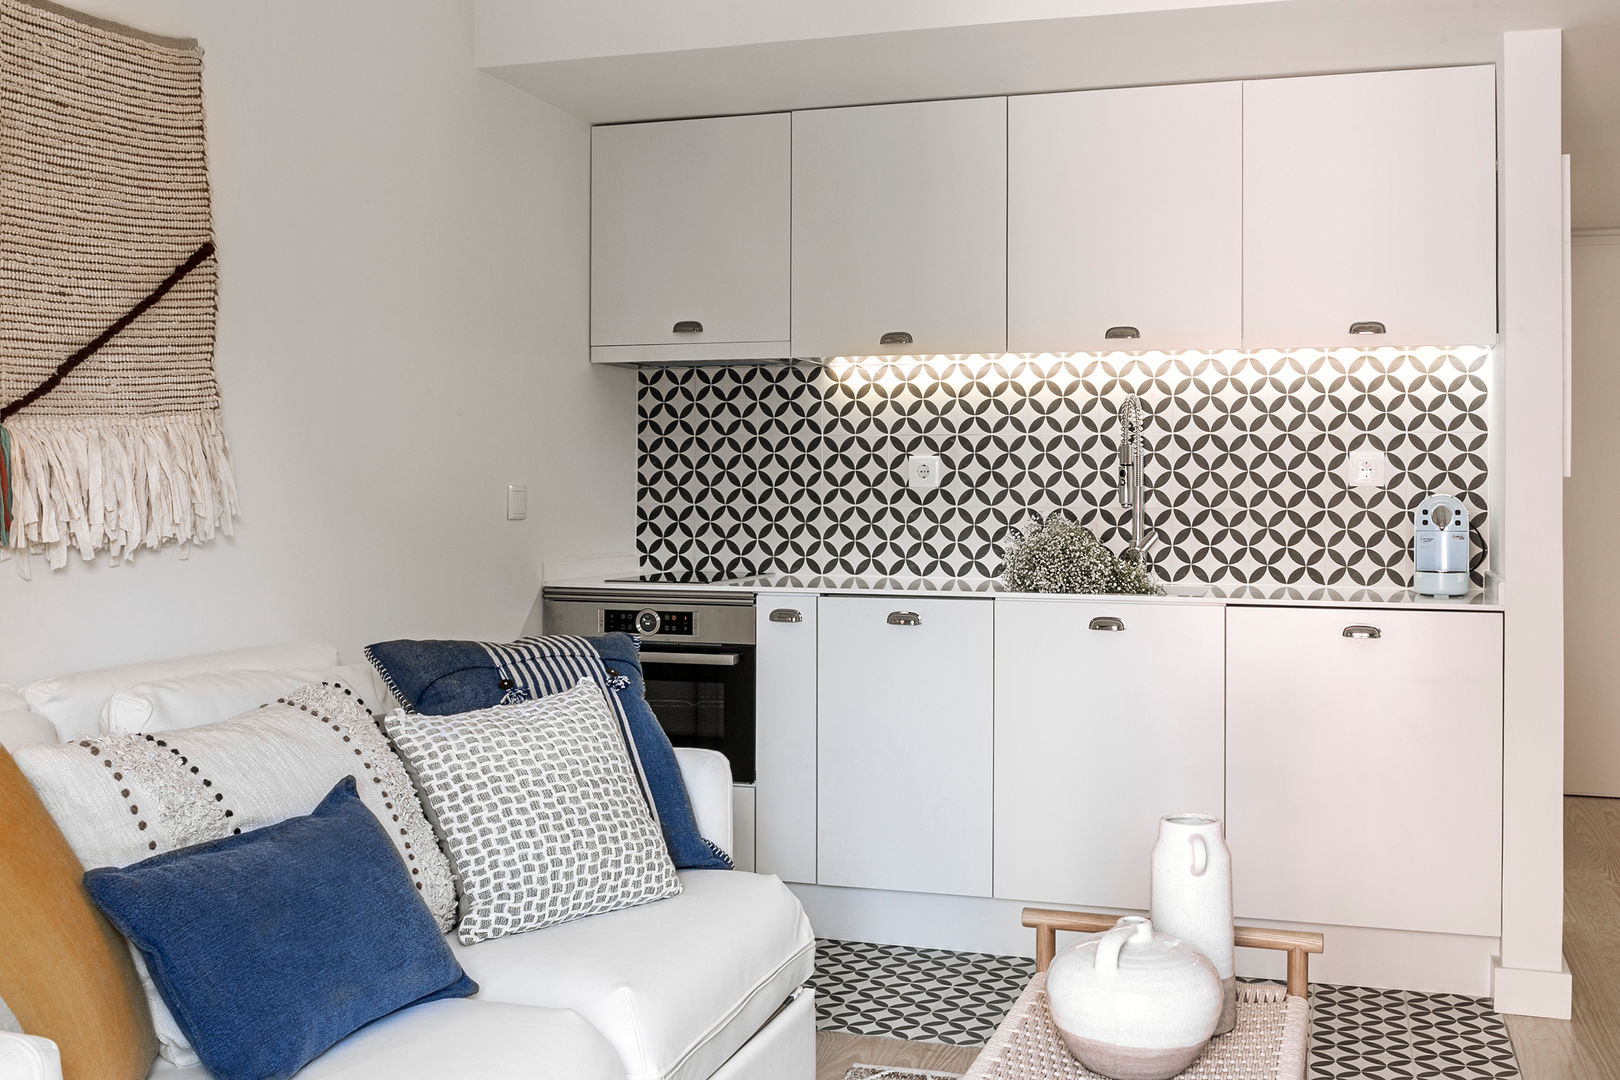 sala de estar - integração com a cozinha Staging Factory Salas de estar modernas